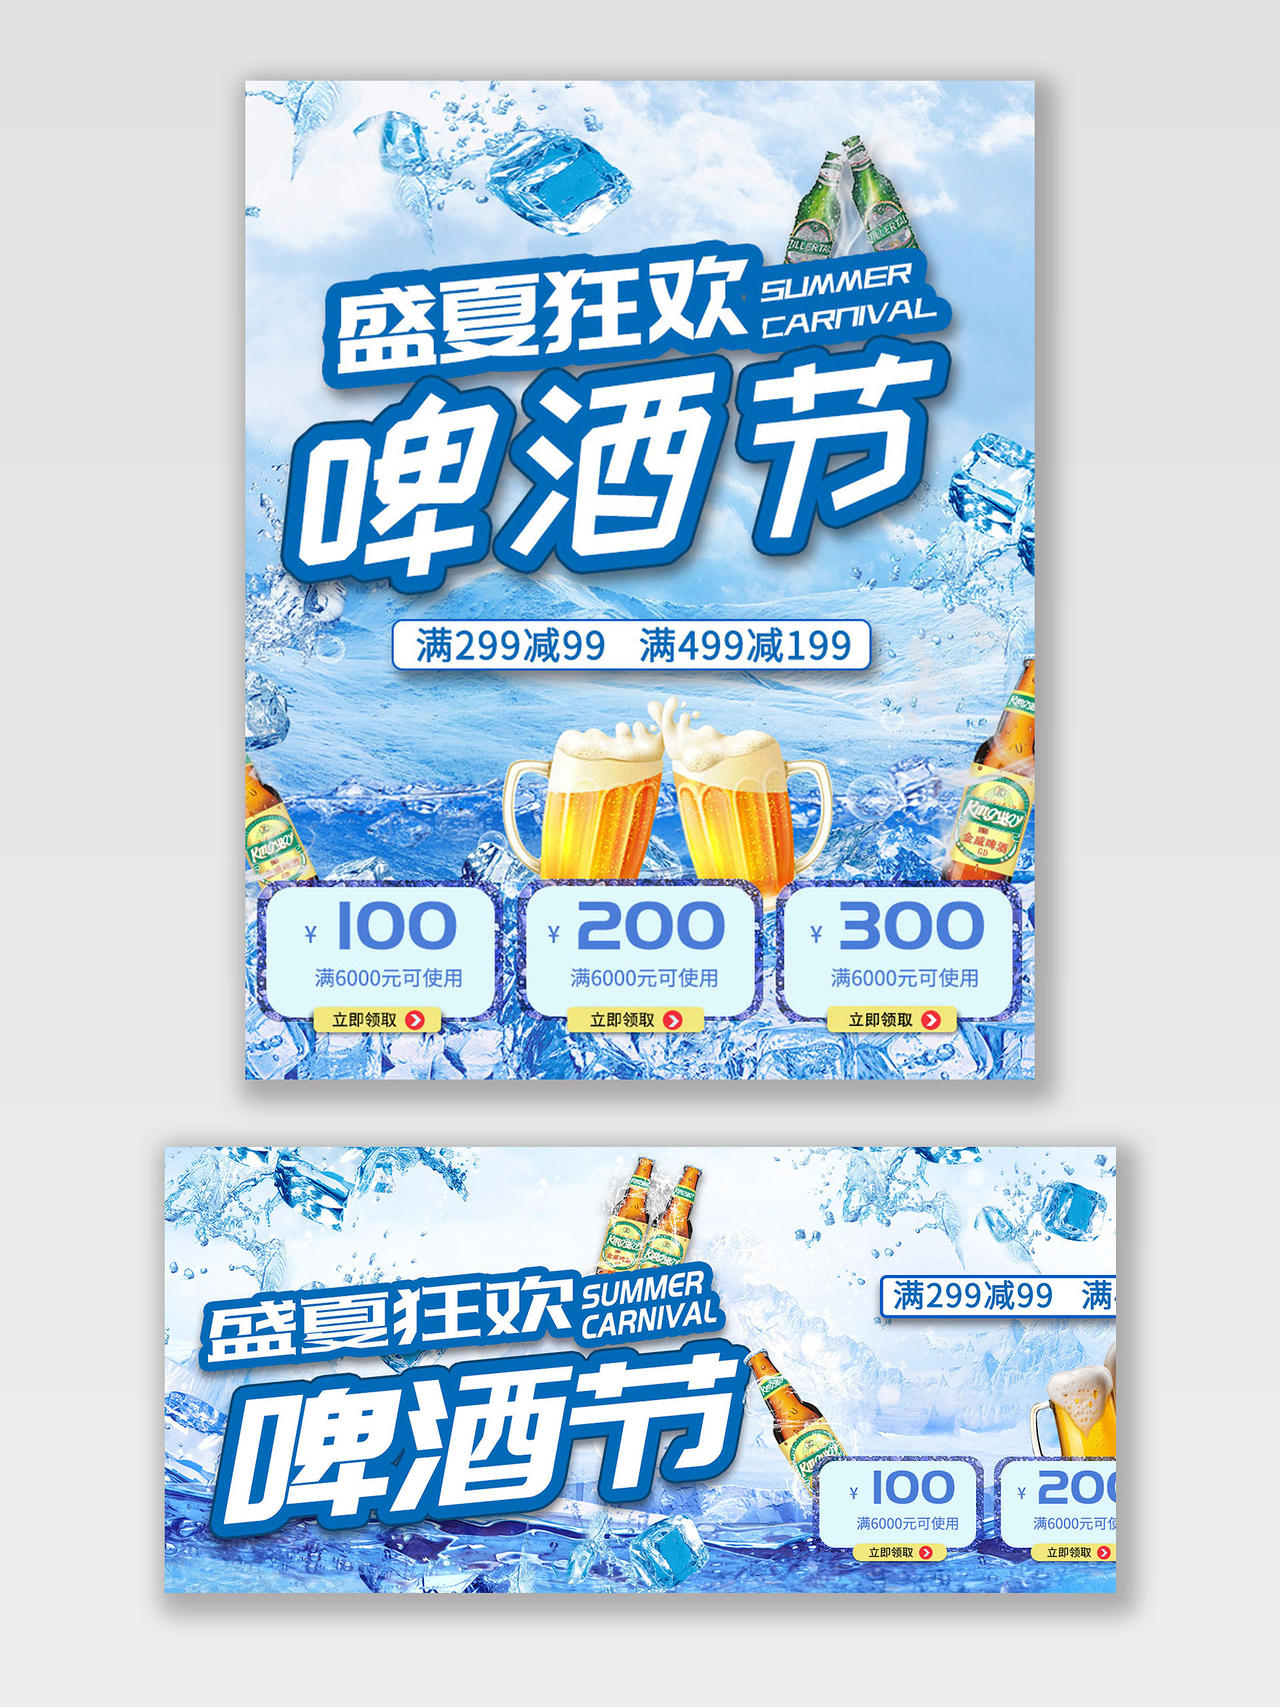 蓝色节日盛夏狂欢啤酒节天猫啤酒节海报banner